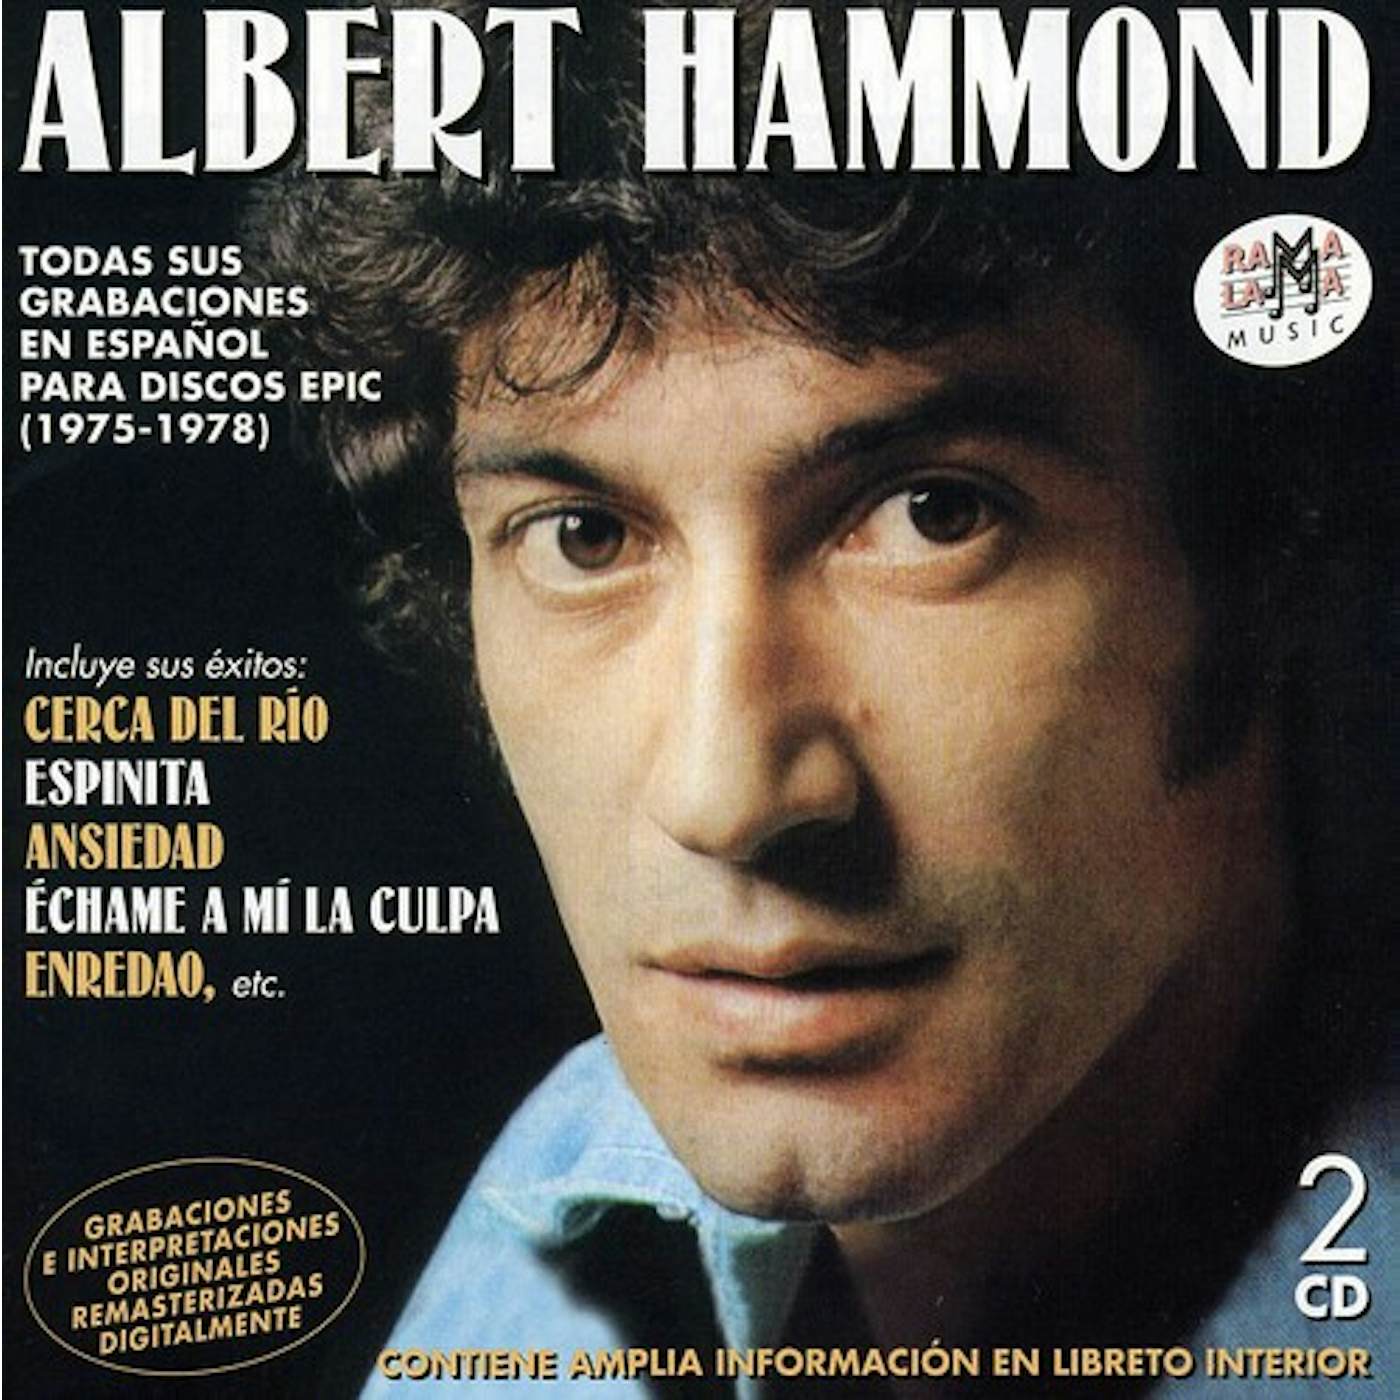 Albert Hammond TODAS SUS GRABACIONES EN ESPANOL PARA EPIC CD